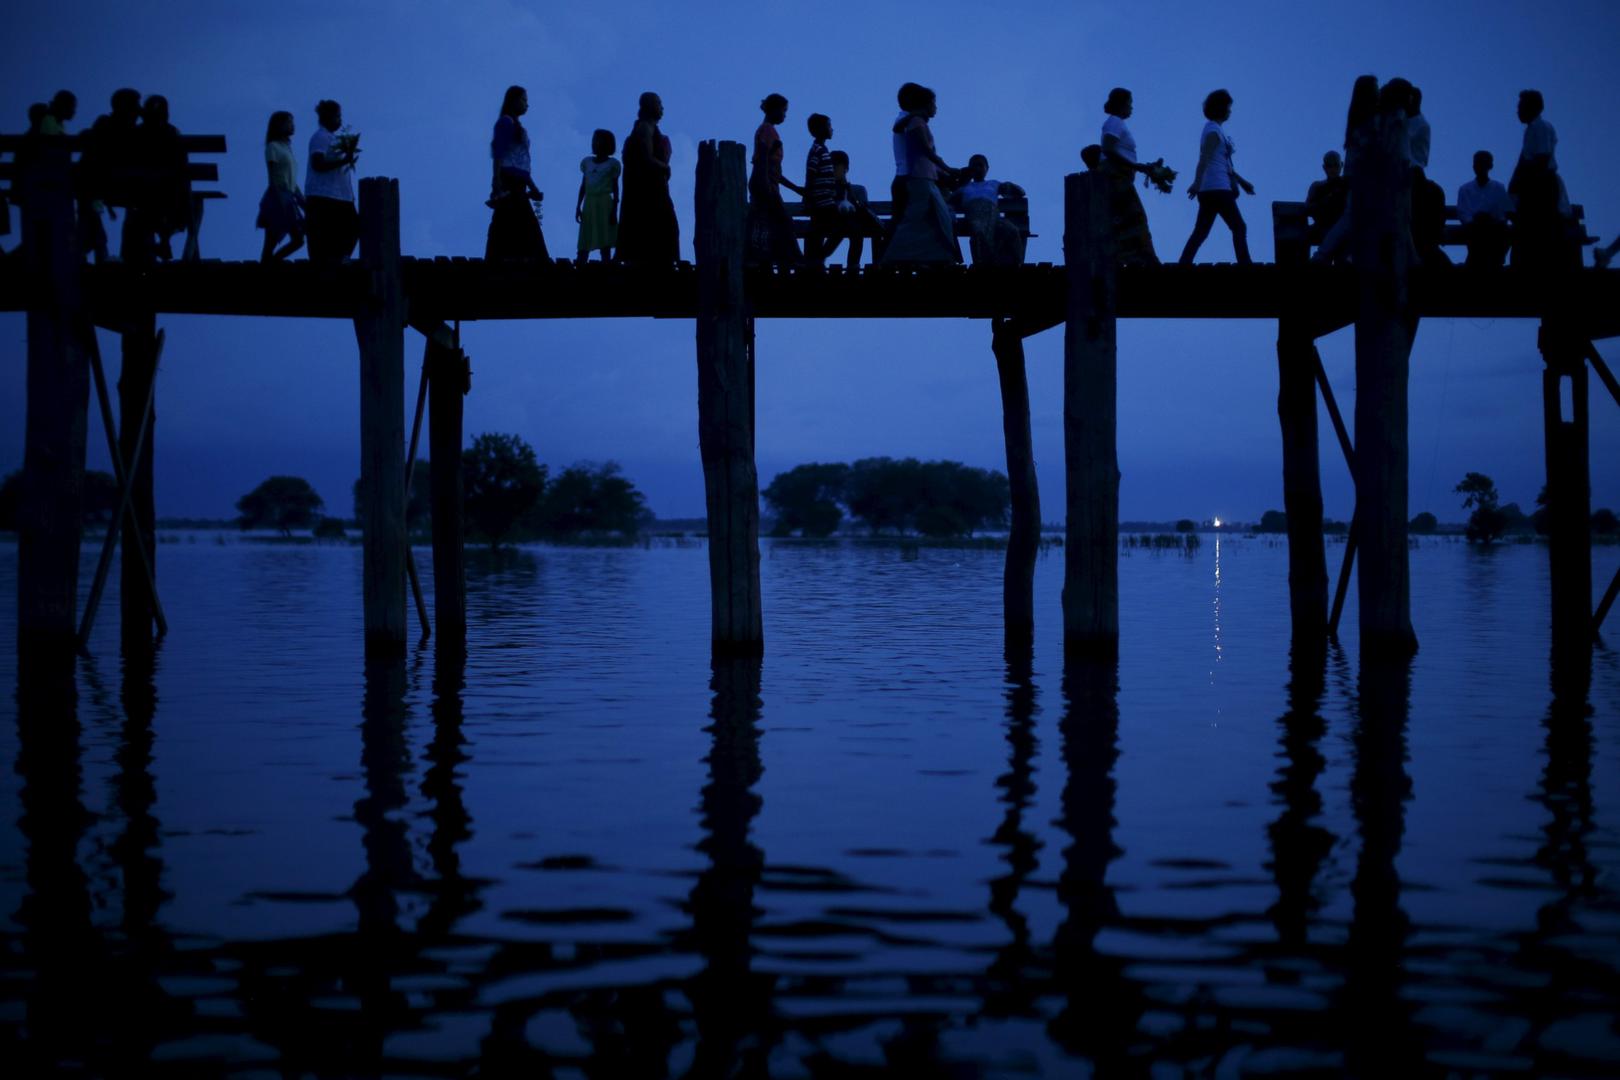 People cross the U Bein bridge in Mandalay, Burma on Oct. 6, 2015.